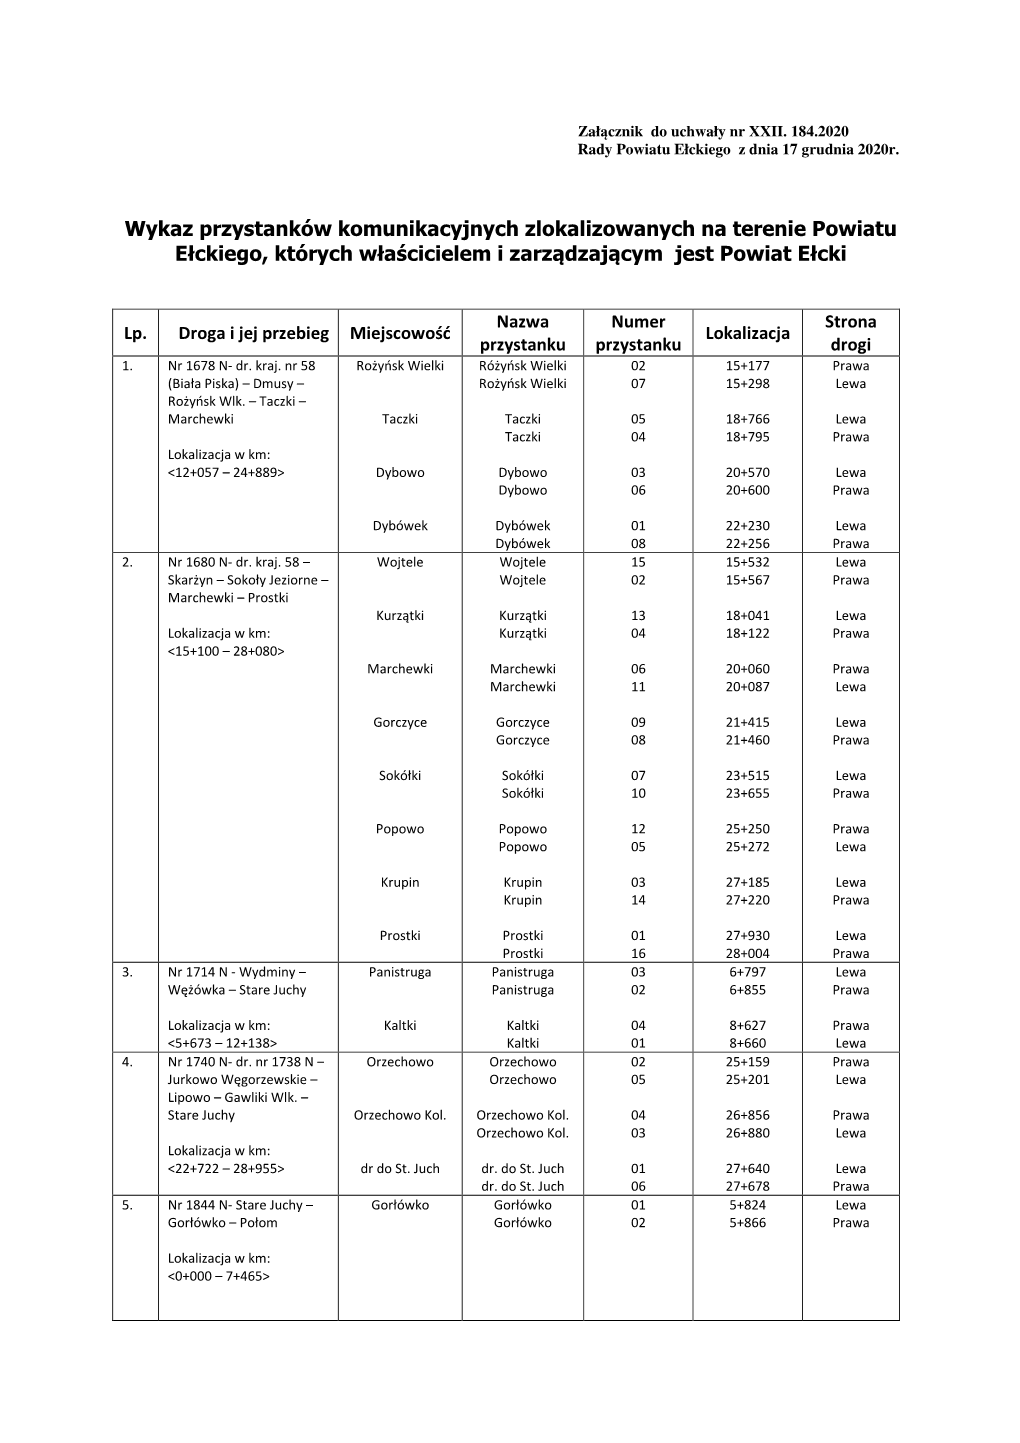 Wykaz Przystanków Komunikacyjnych Zlokalizowanych Na Terenie Powiatu Ełckiego, Których Właścicielem I Zarządzającym Jest Powiat Ełcki